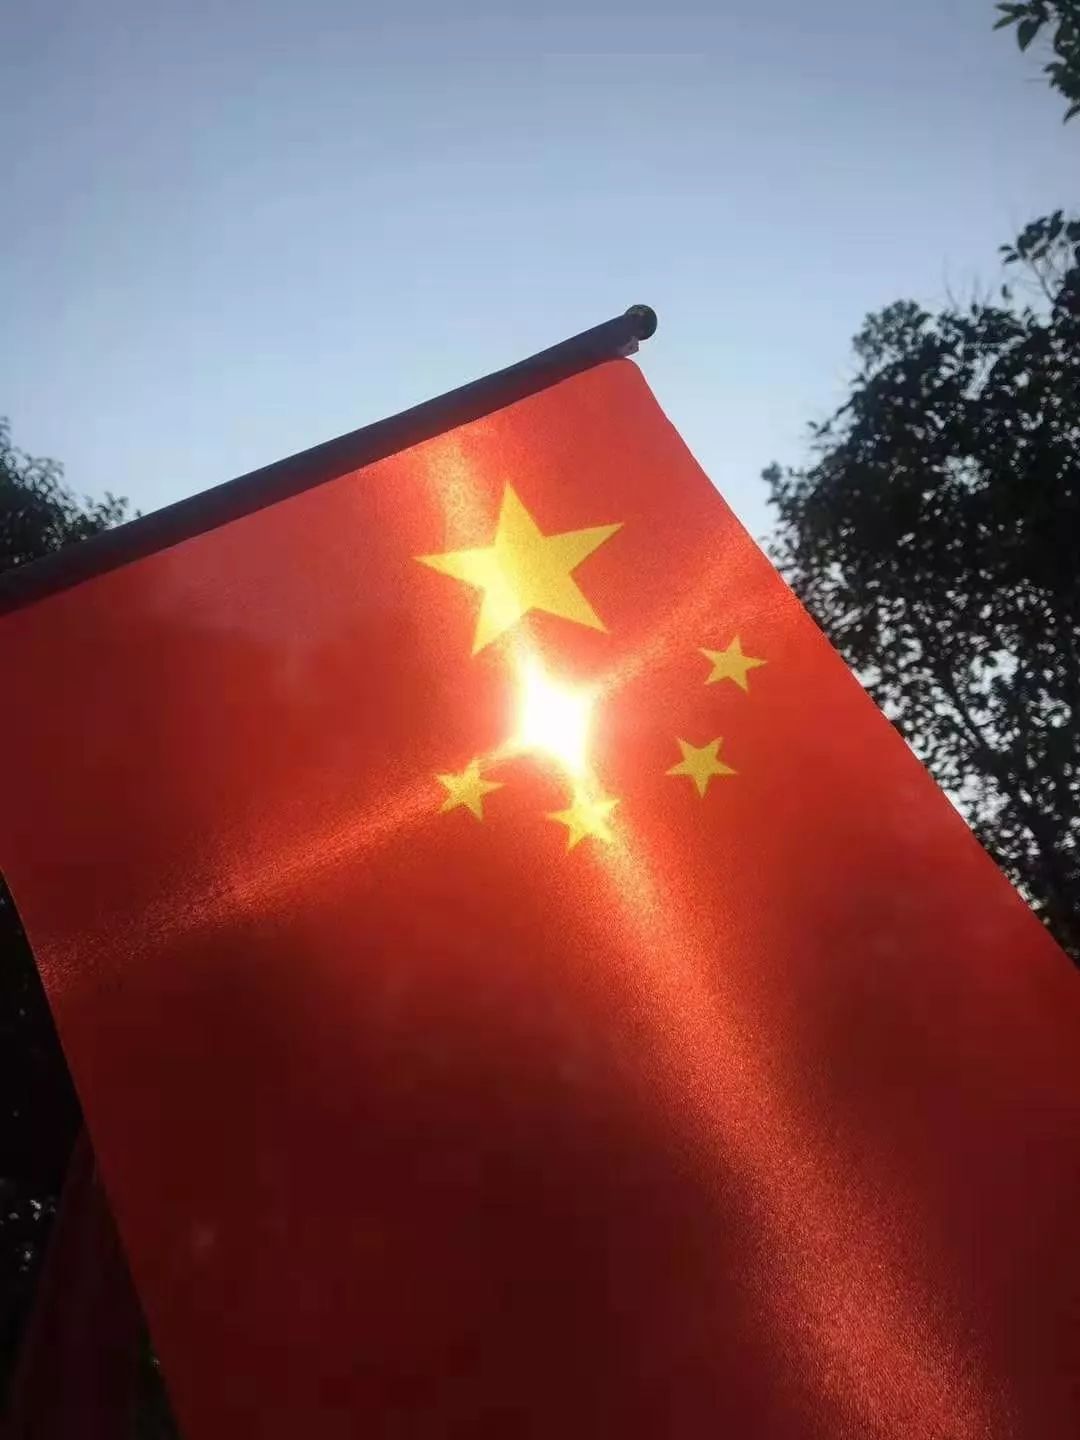 中国国旗屏保图片竖屏图片